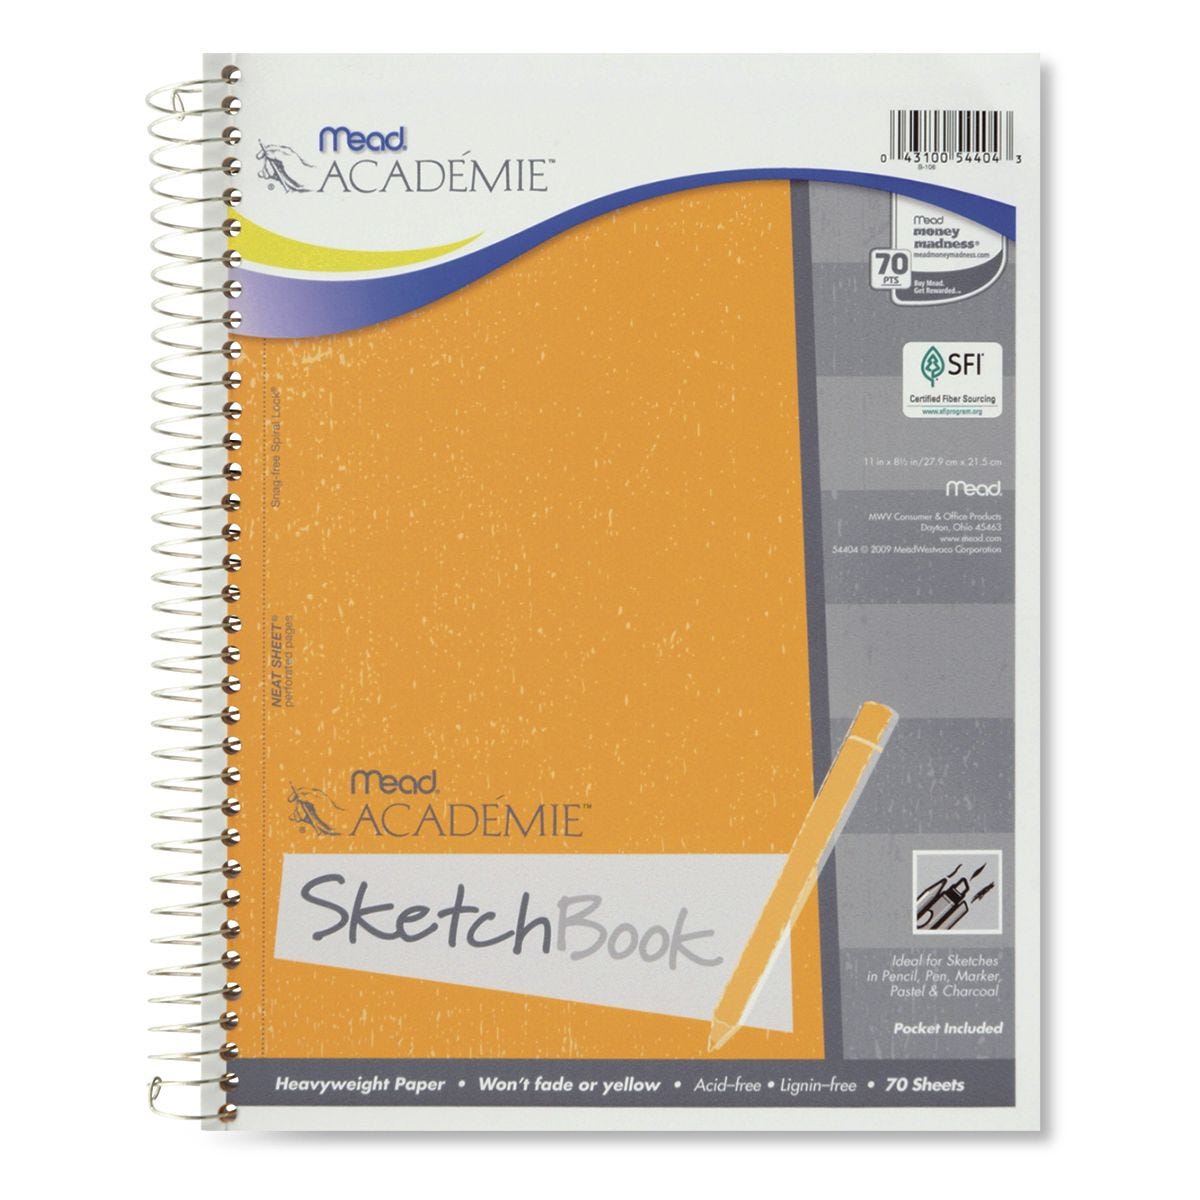 Derwent Academy Wirebound Sketchbook 9 x 12, 70CT - MEA54964, Mead  Products Llc